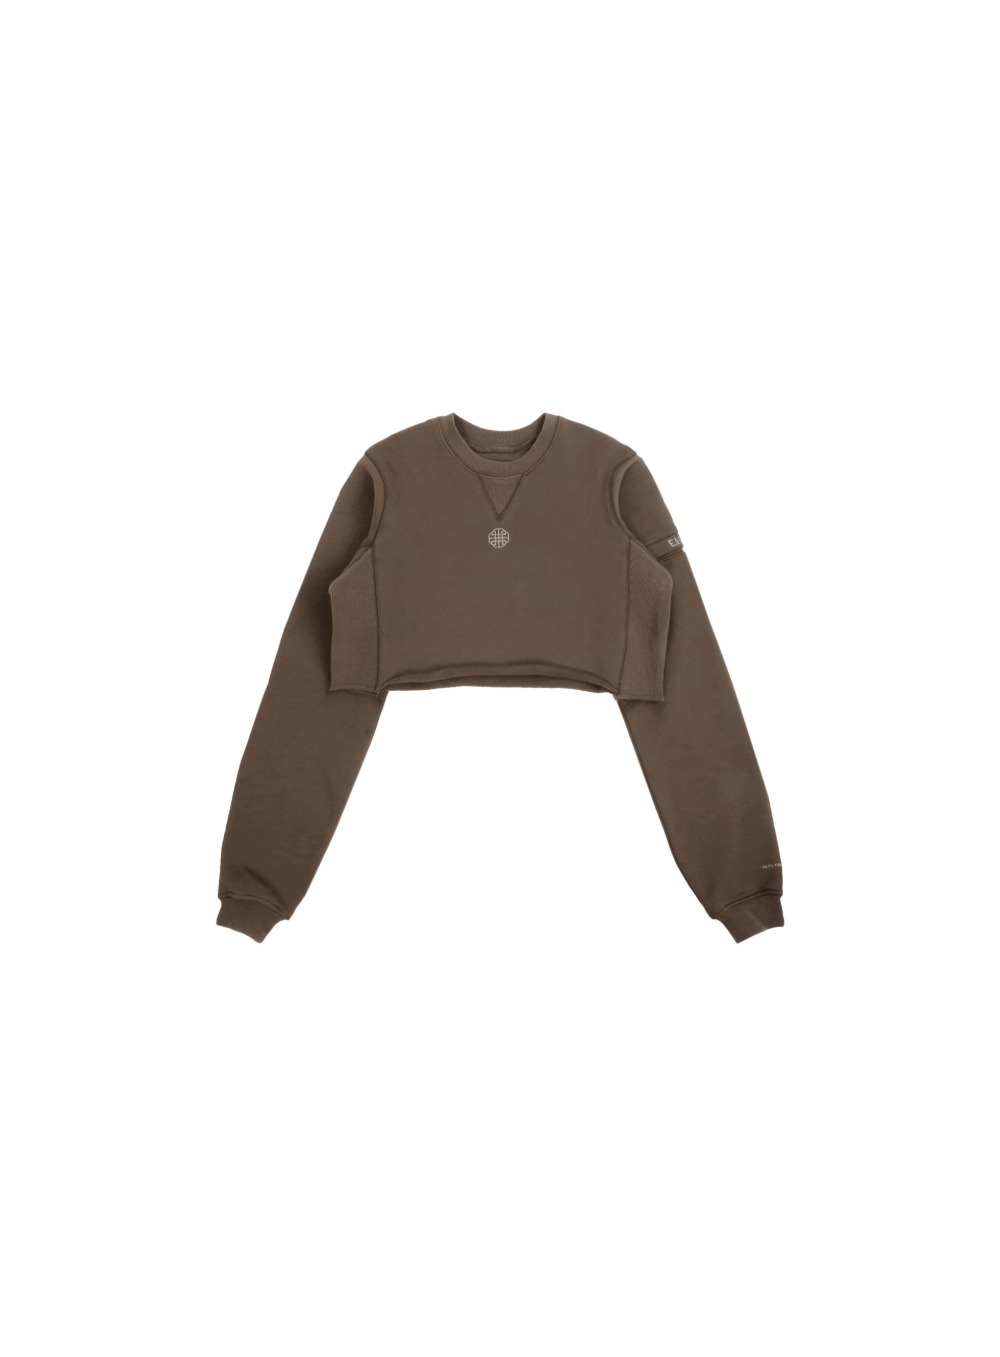 The Crop Sweatshirt - Brown